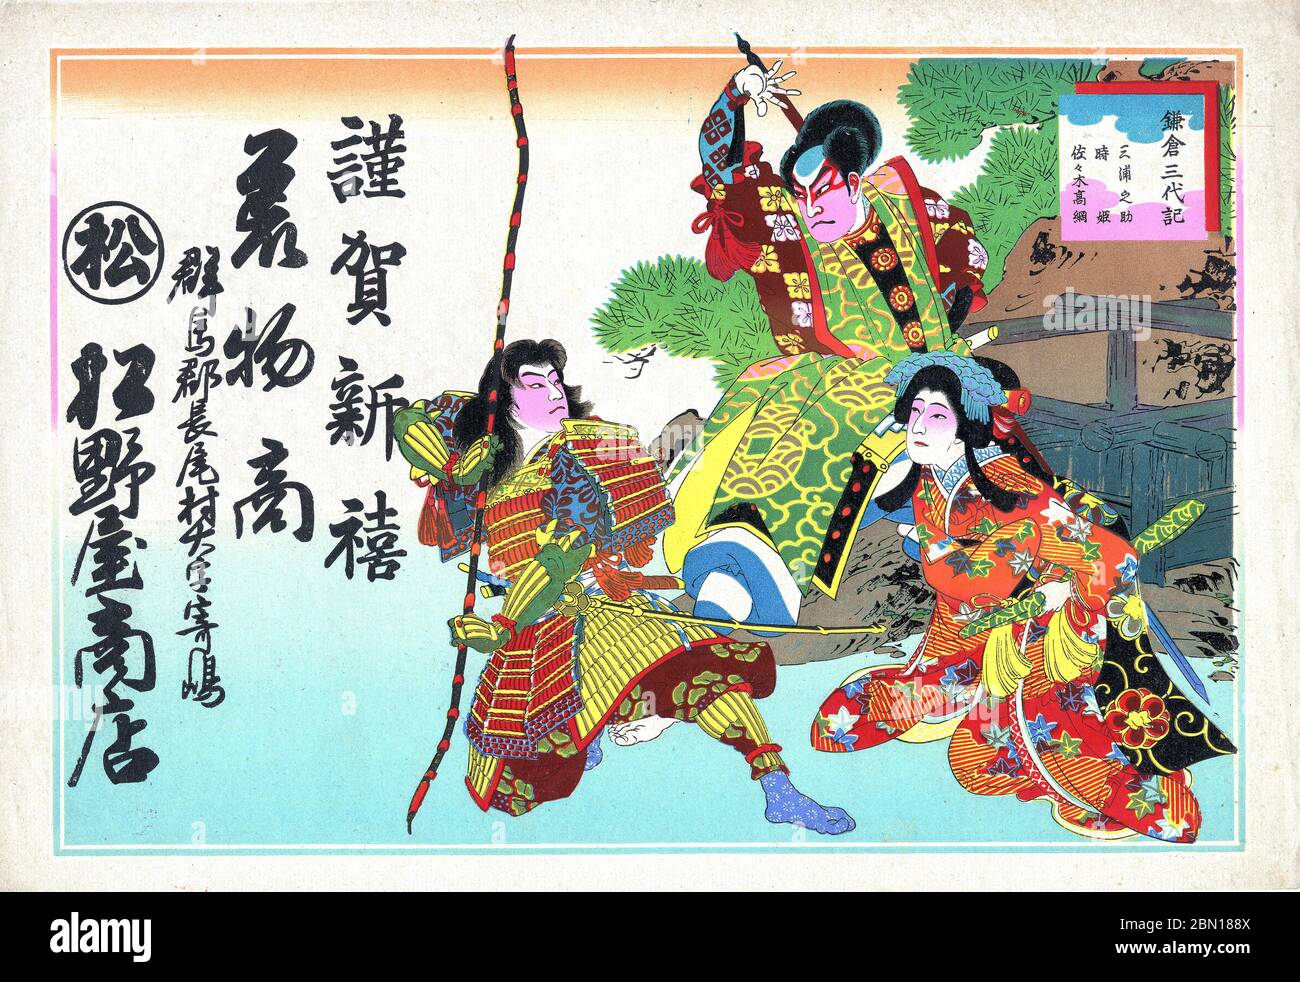 [ 1900 Giappone - tre attori Kabuki ] - Hikifuda (引札), una stampa utilizzata come volantino pubblicitario dai negozi locali. Erano popolari dal 1800 fino agli anni 1920. Questa stampa mostra tre attori kabuki. La scrittura pubblicizza un deposito di kimono. volantino pubblicitario vintage del xx secolo. Foto Stock